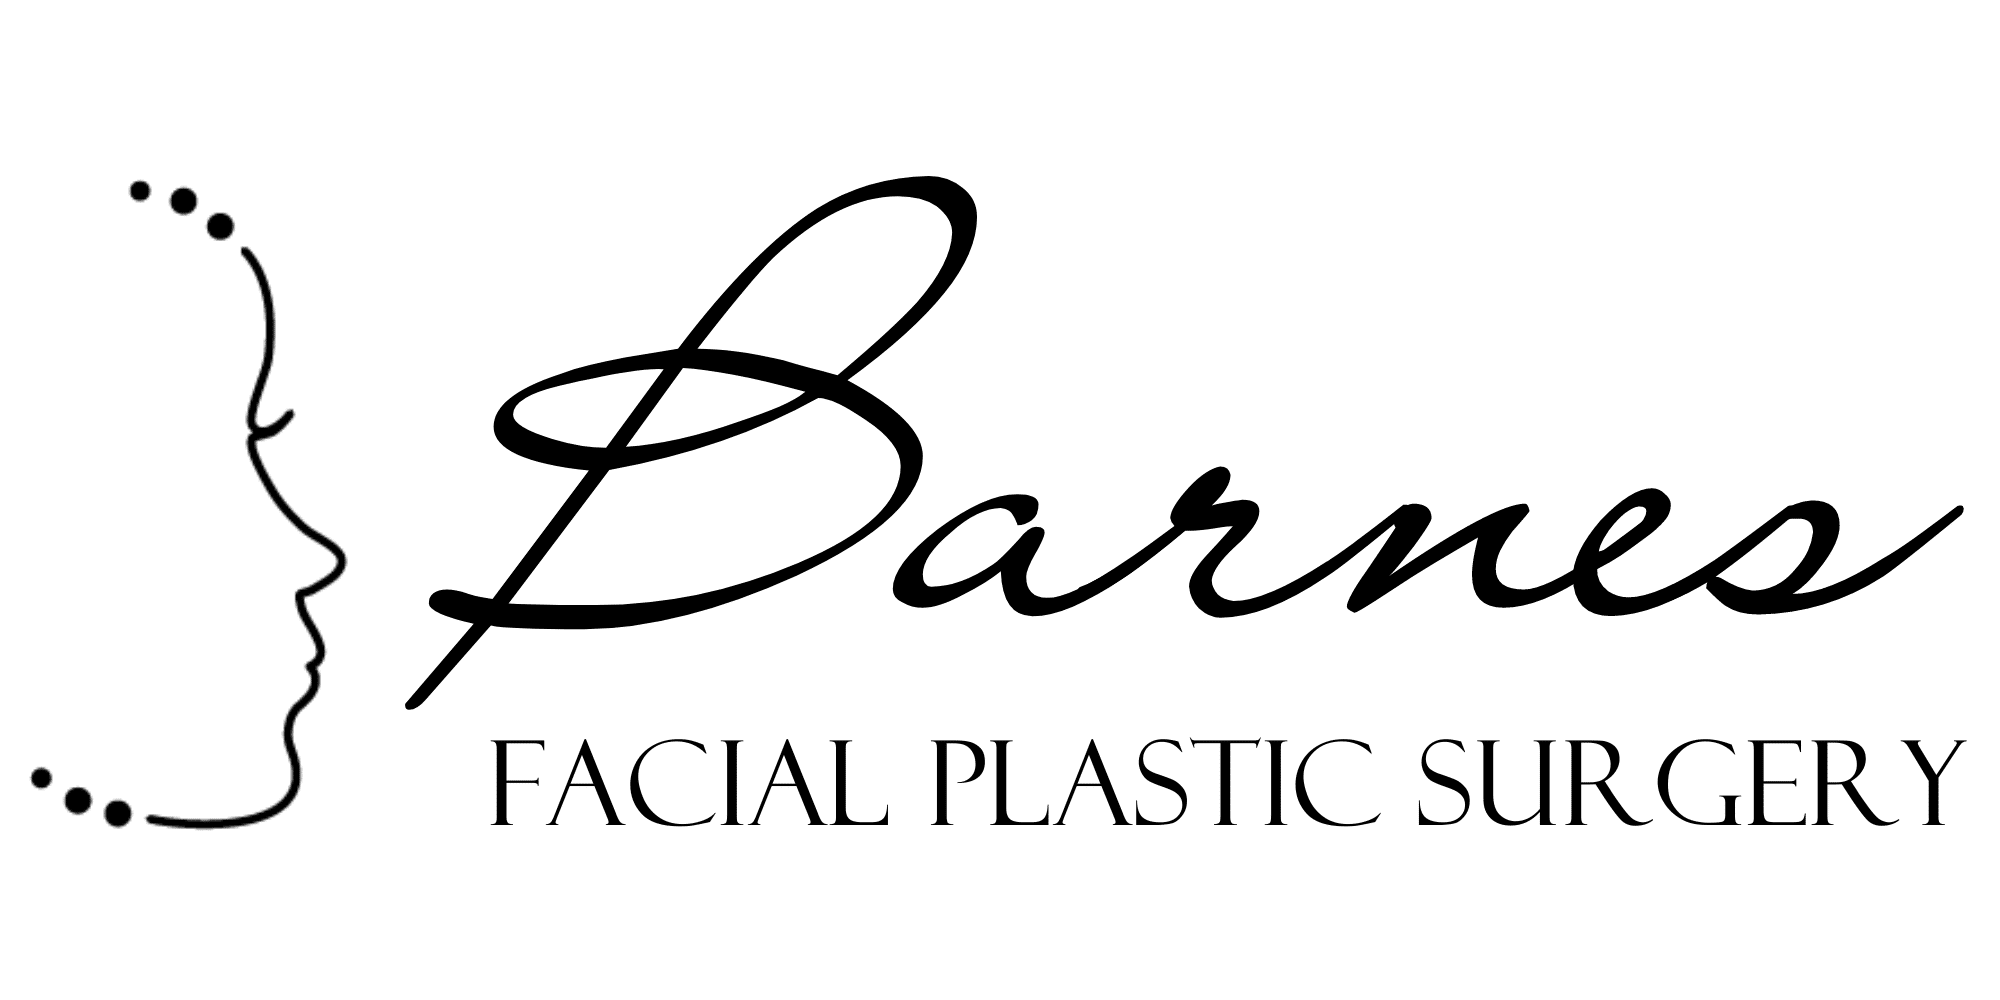 barnes facial plastic surgery